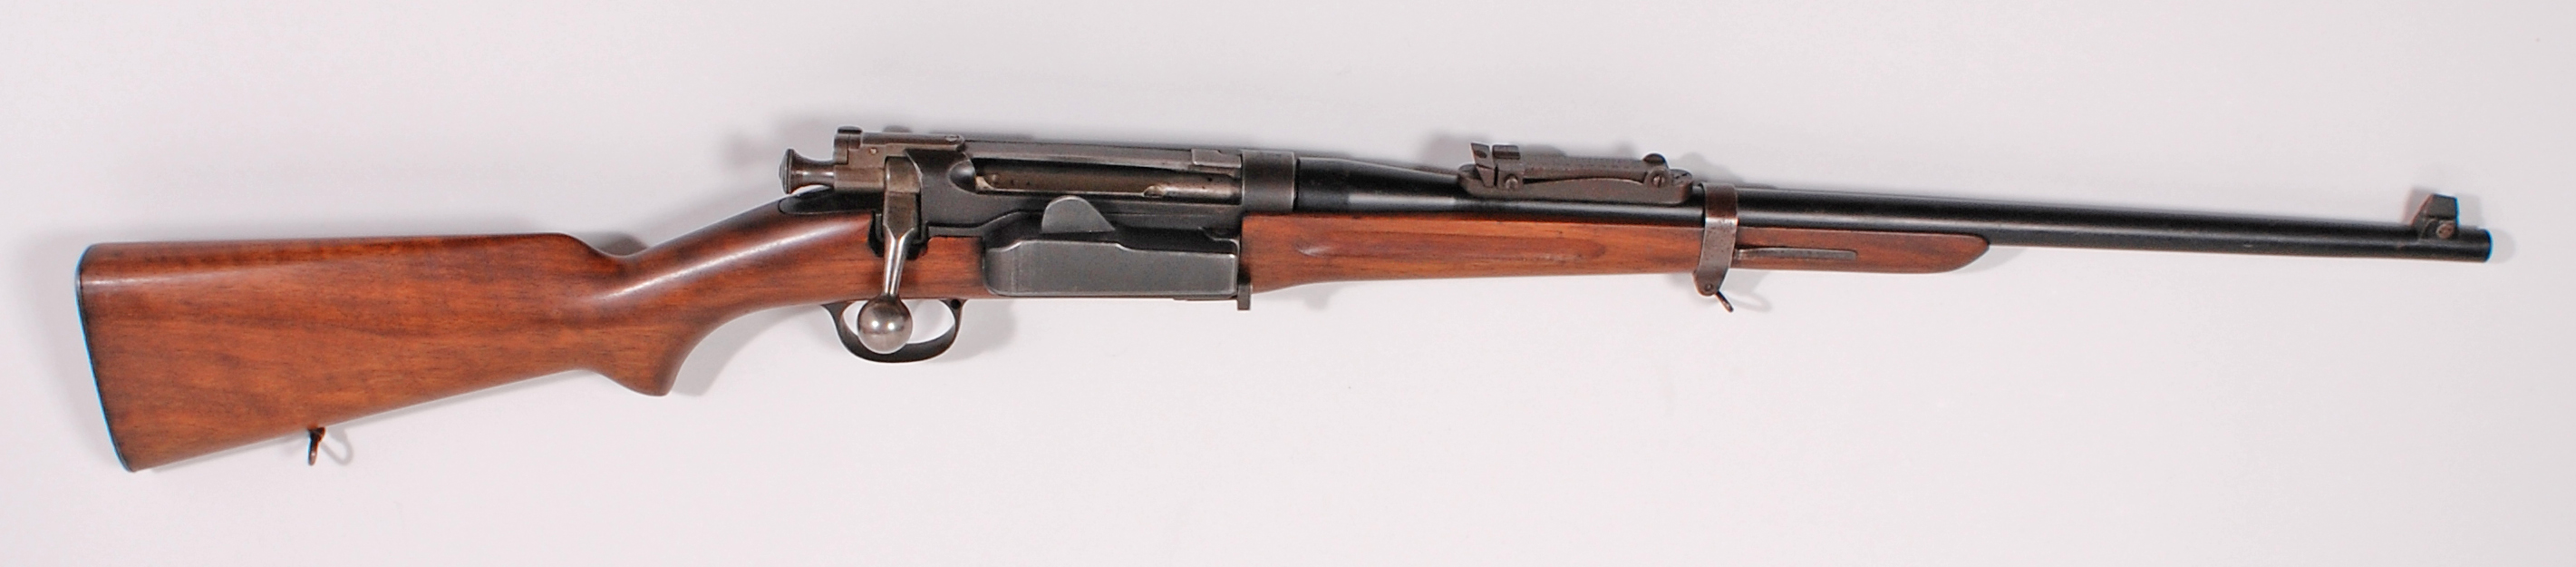 ./guns/rifle/bilder/Rifle-Kongsberg-Krag-M1906-1449-1.jpg